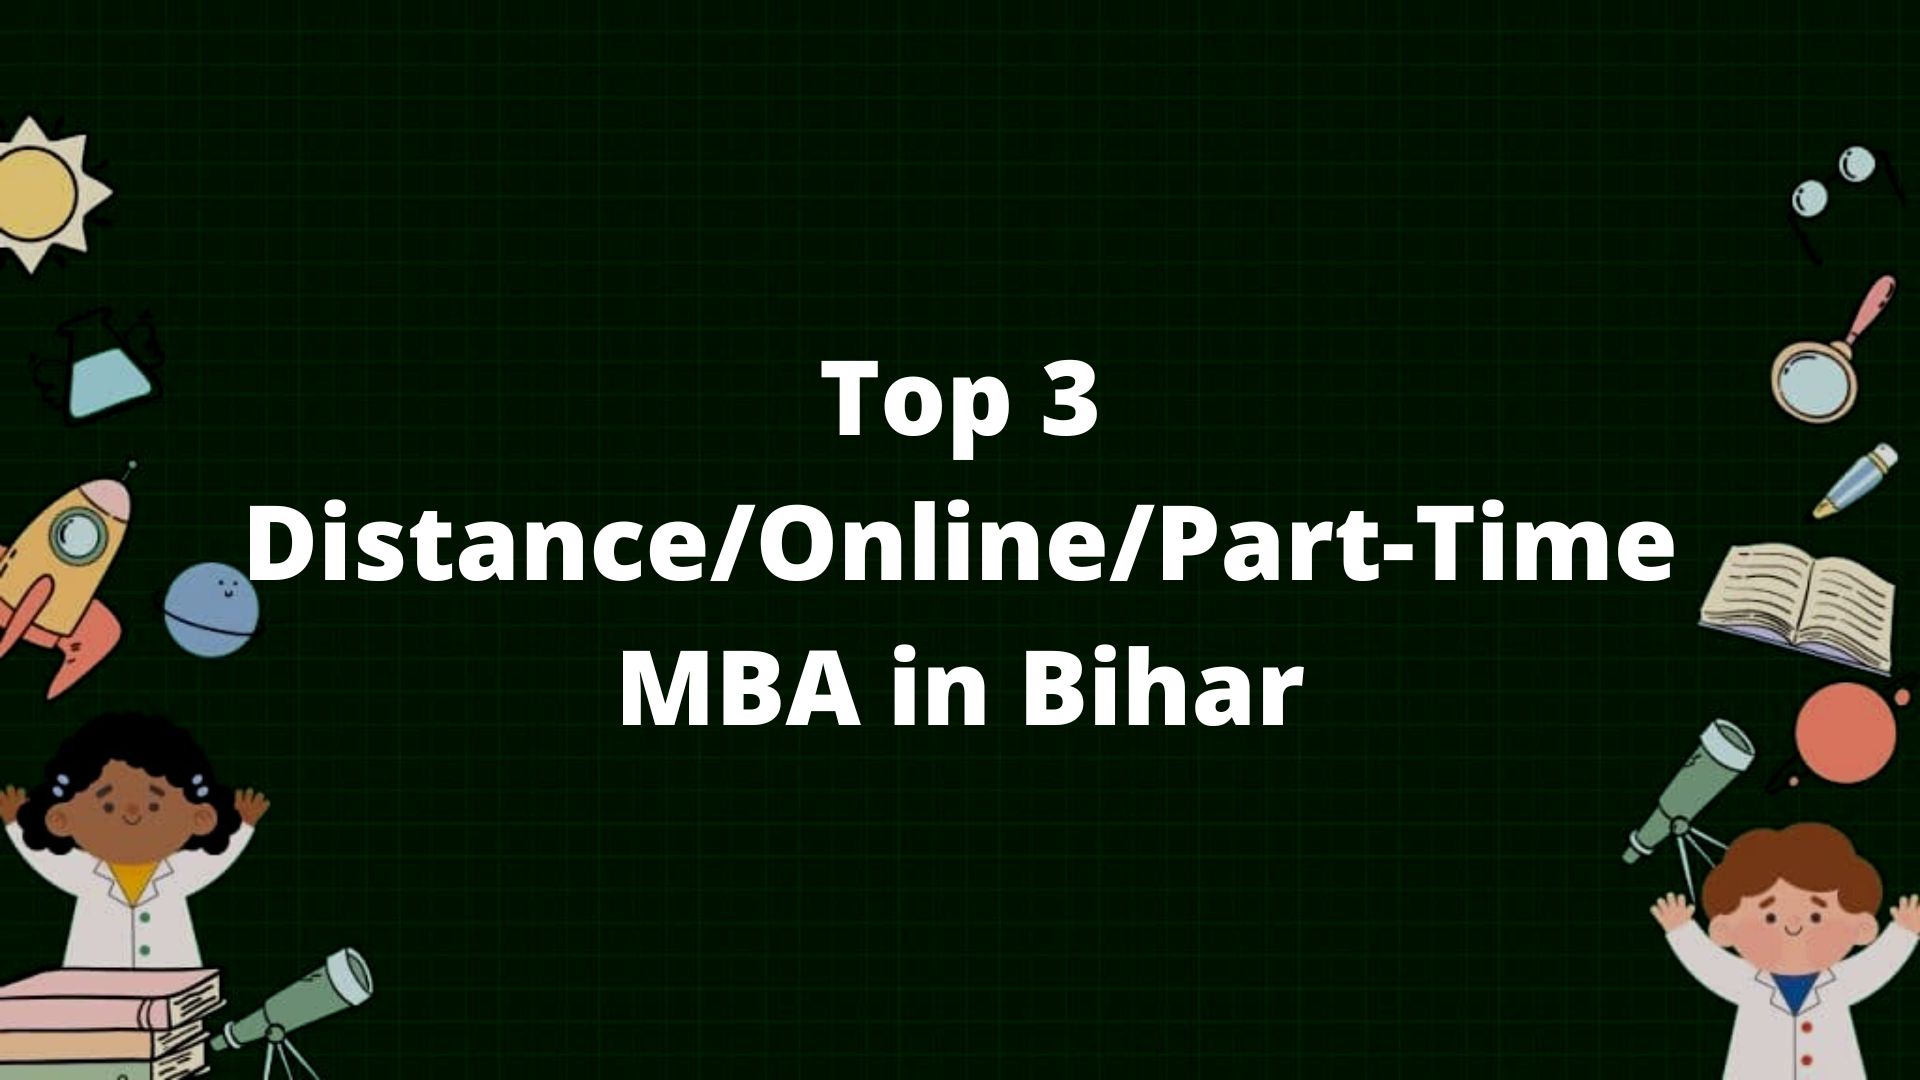 Top 3 MBA Colleges in Bihar